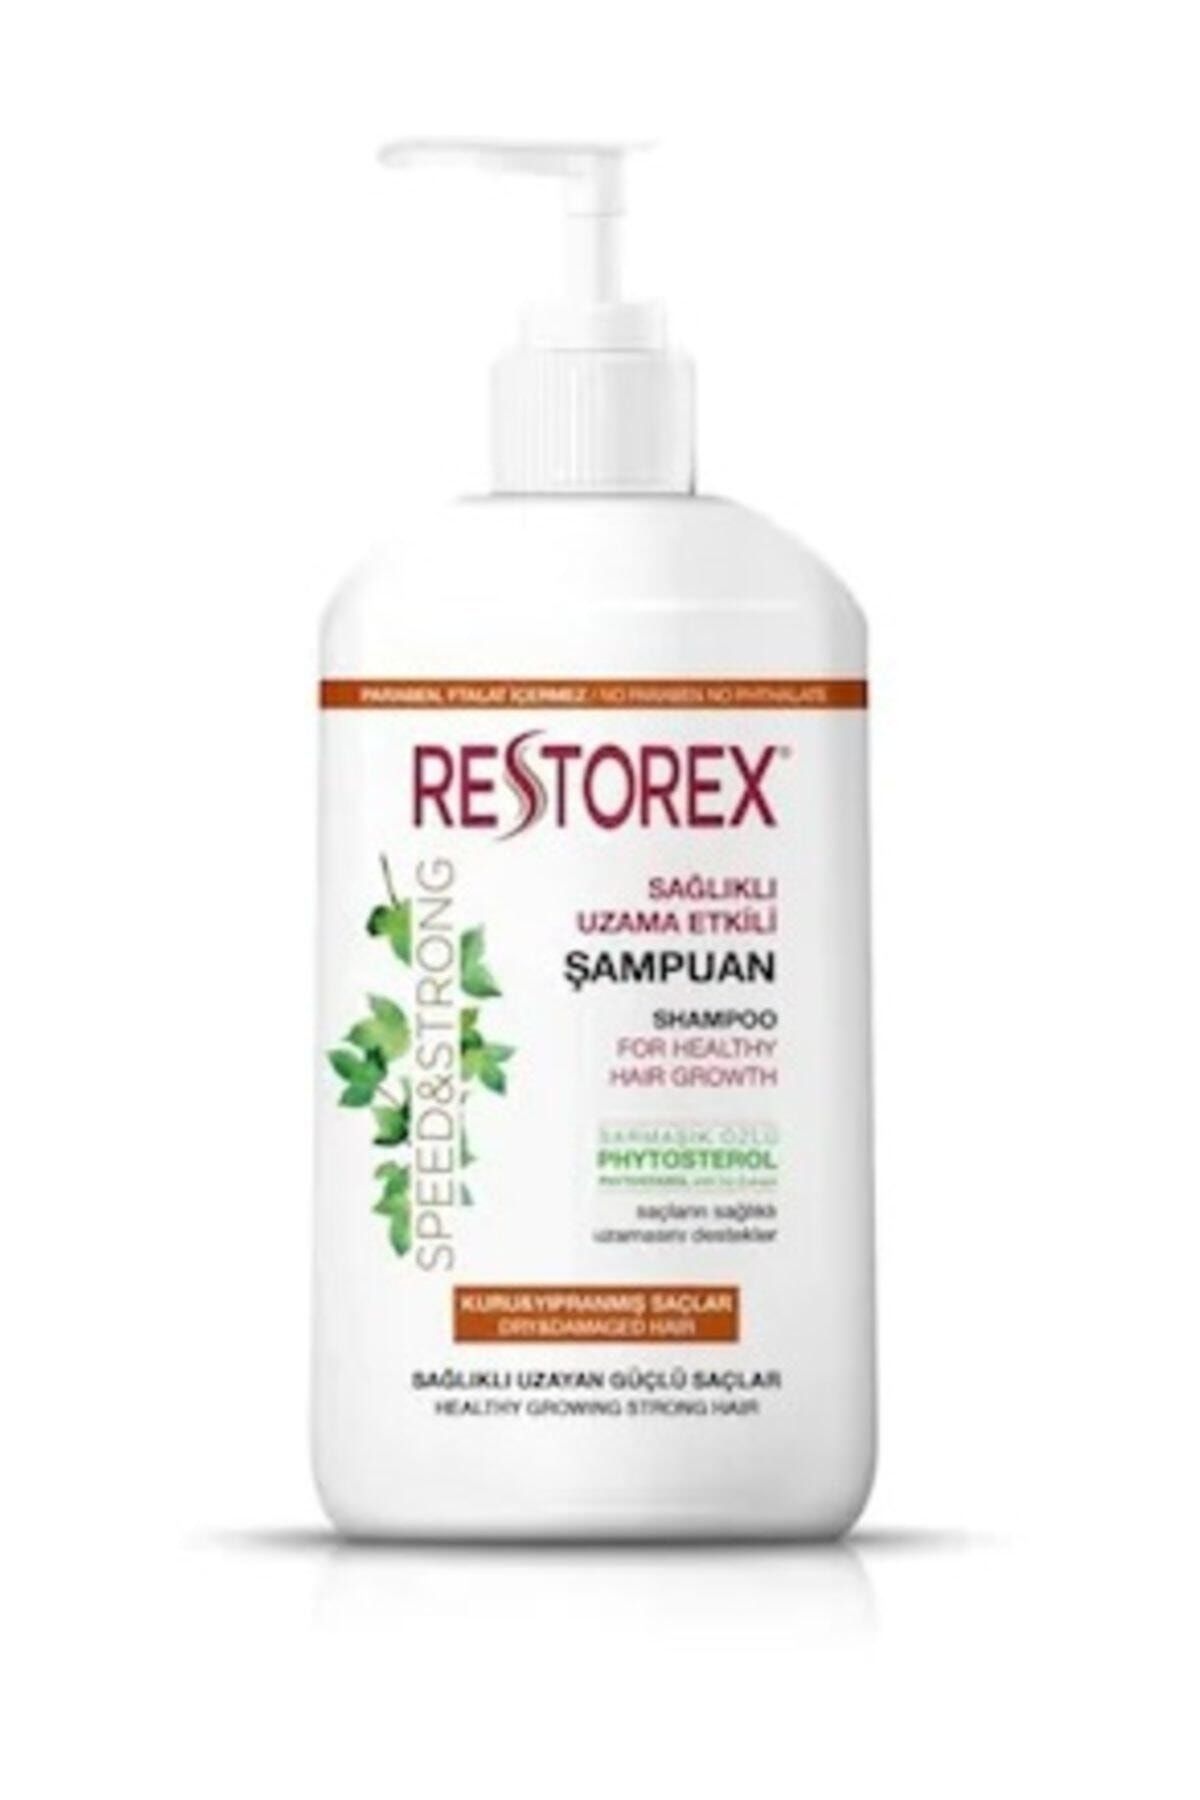 Restorex Kuru Yıpranmış Saçlar Için Onarıcı Bakım Şampuanı 1000